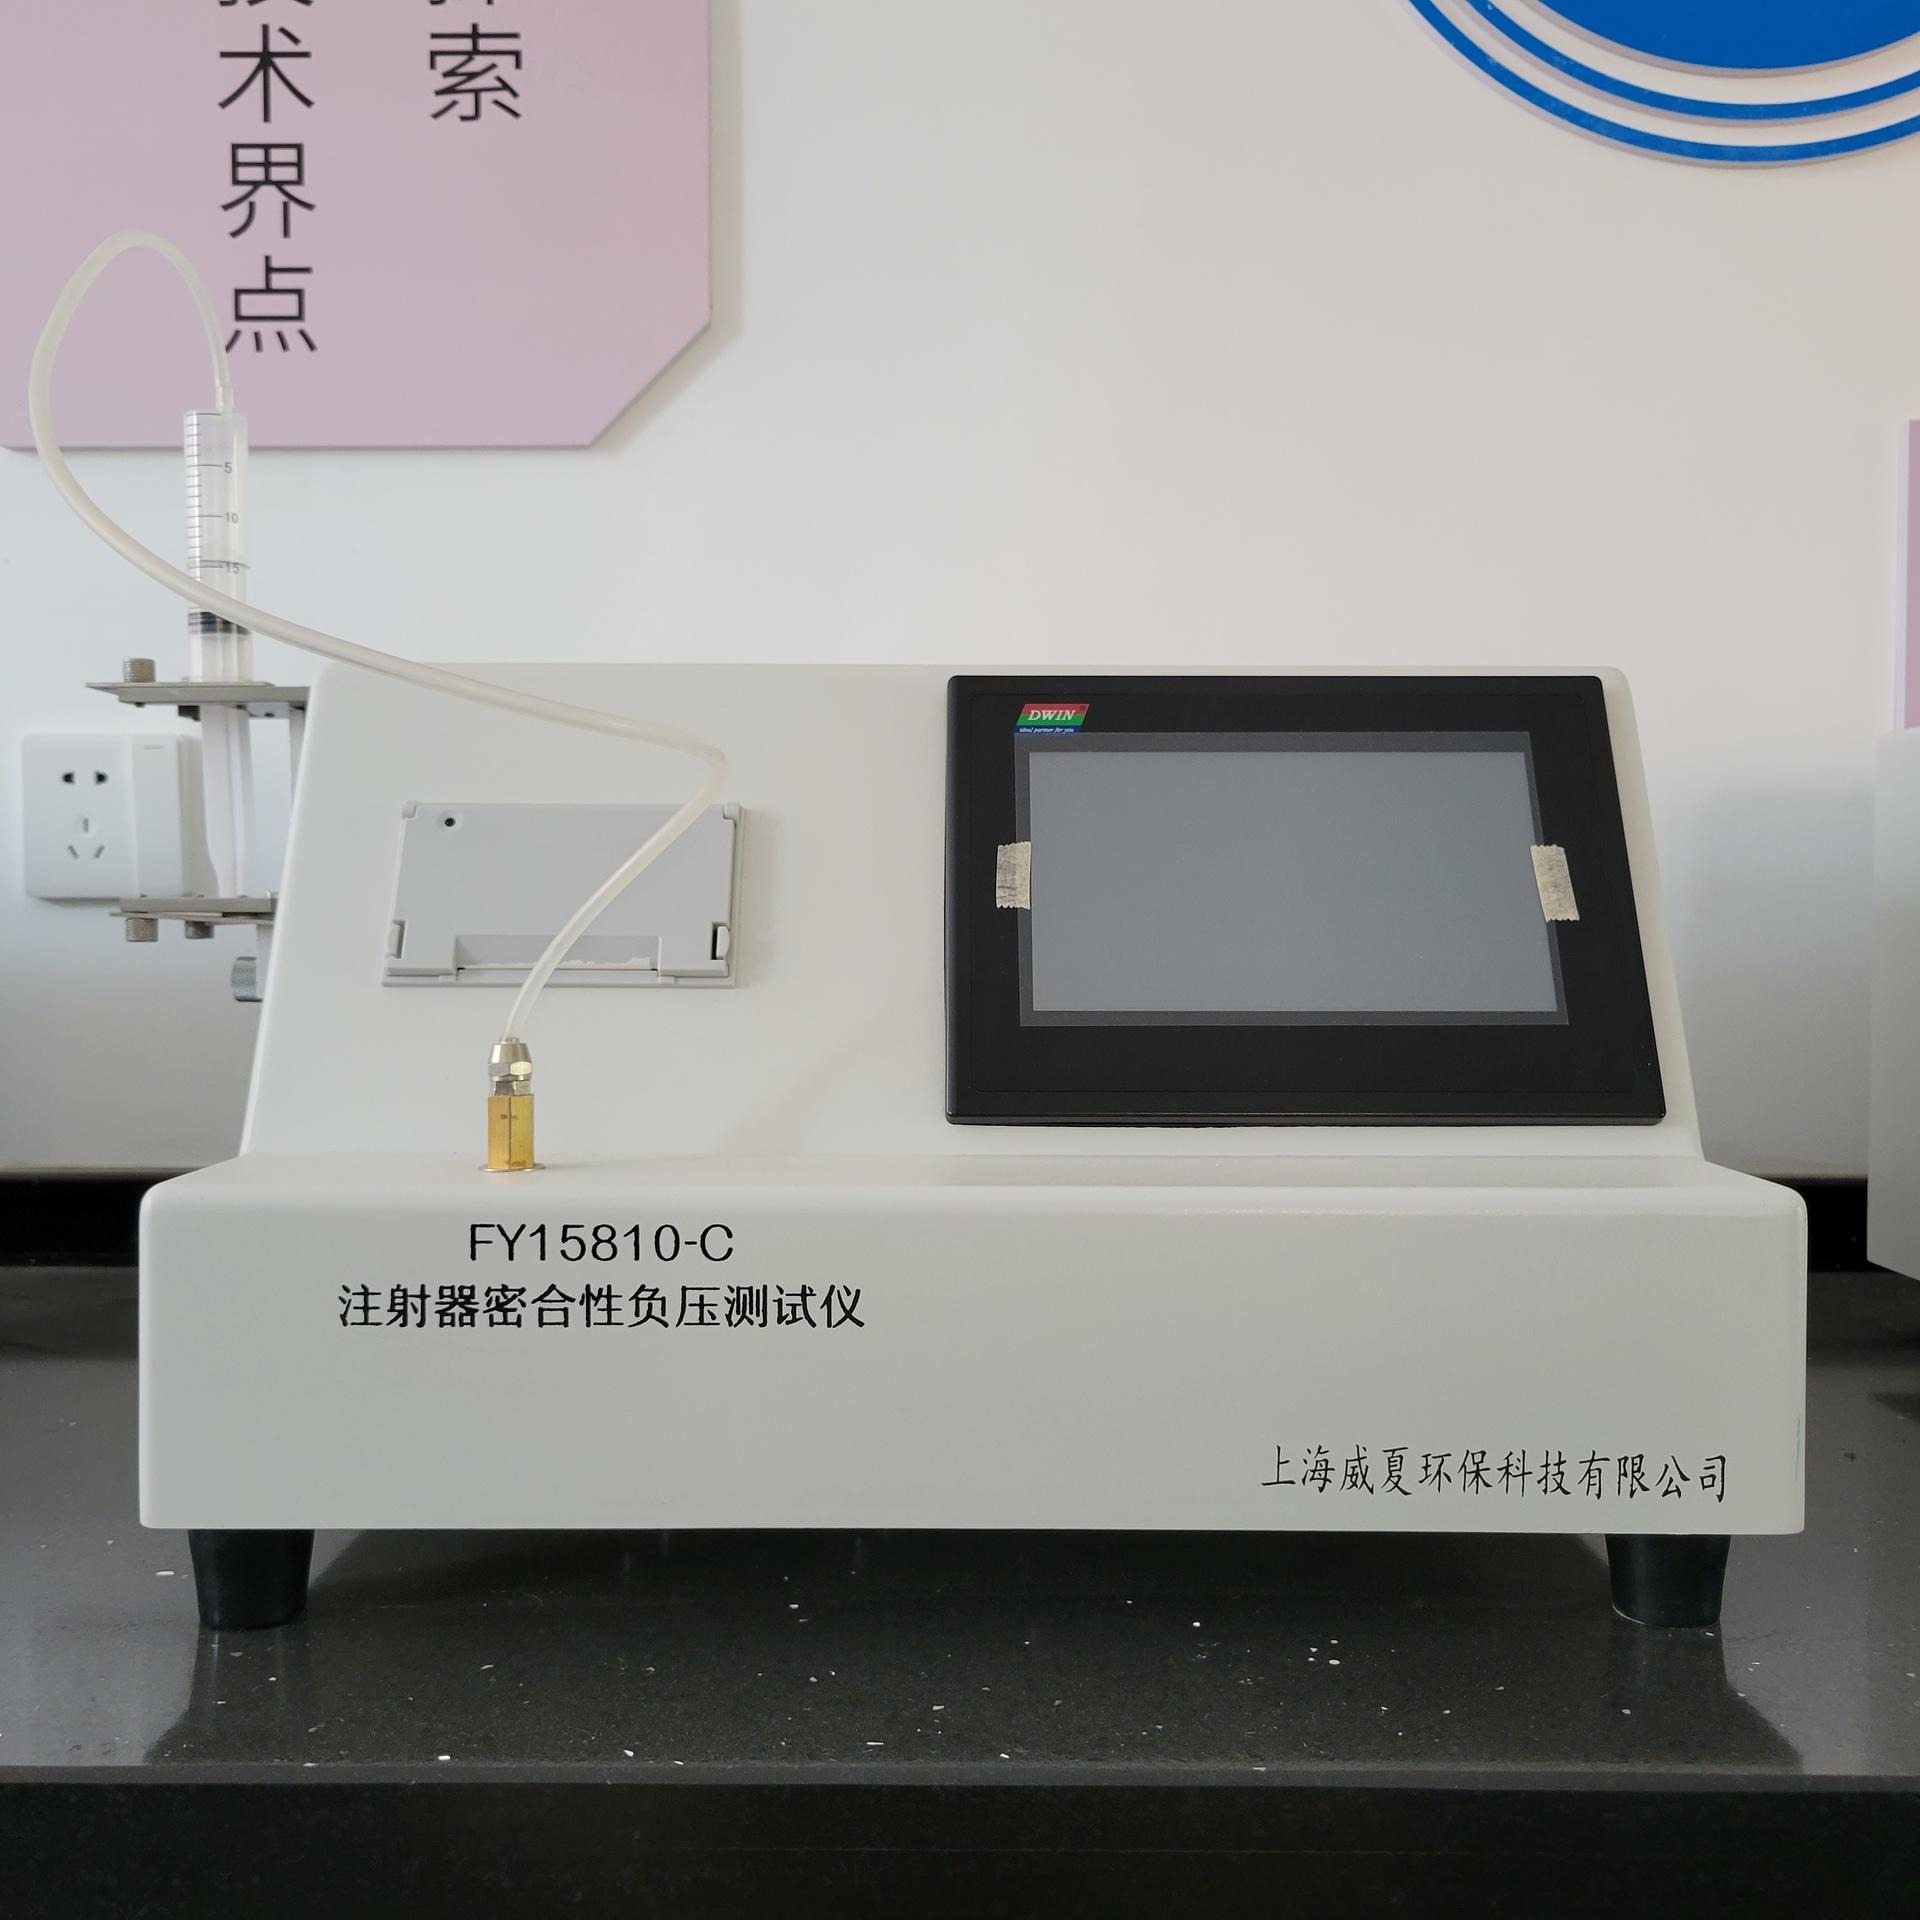 杭州 威夏 FY15810-C注射器密合性负压测试仪 适用于输液器、输血器、输液针、管路、导管、过滤器、快速接头